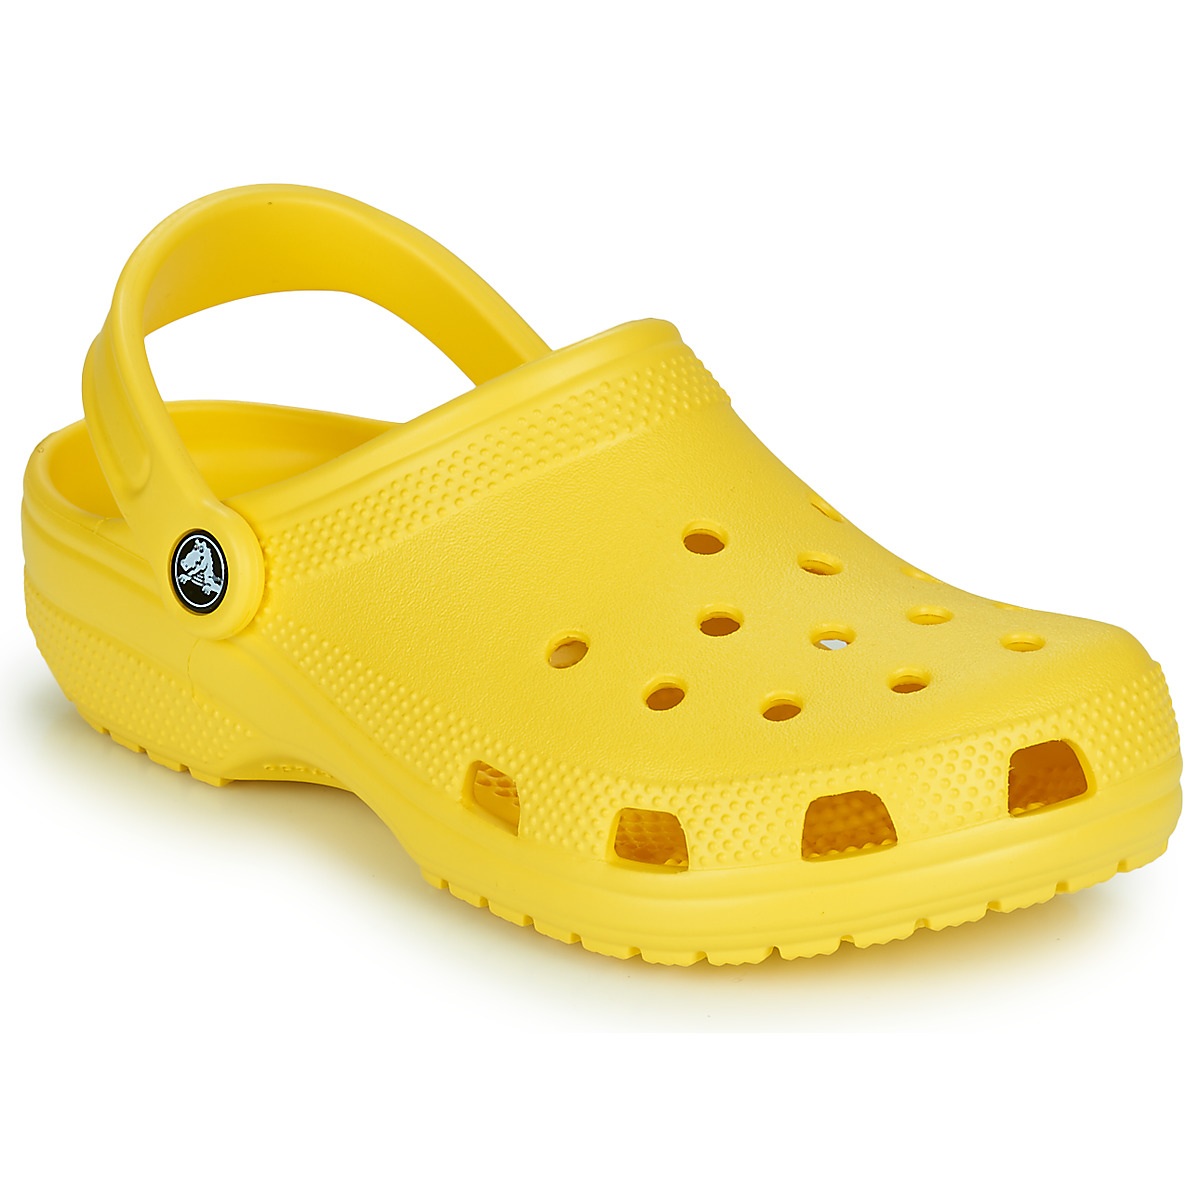 Klompen Crocs  CLASSIC